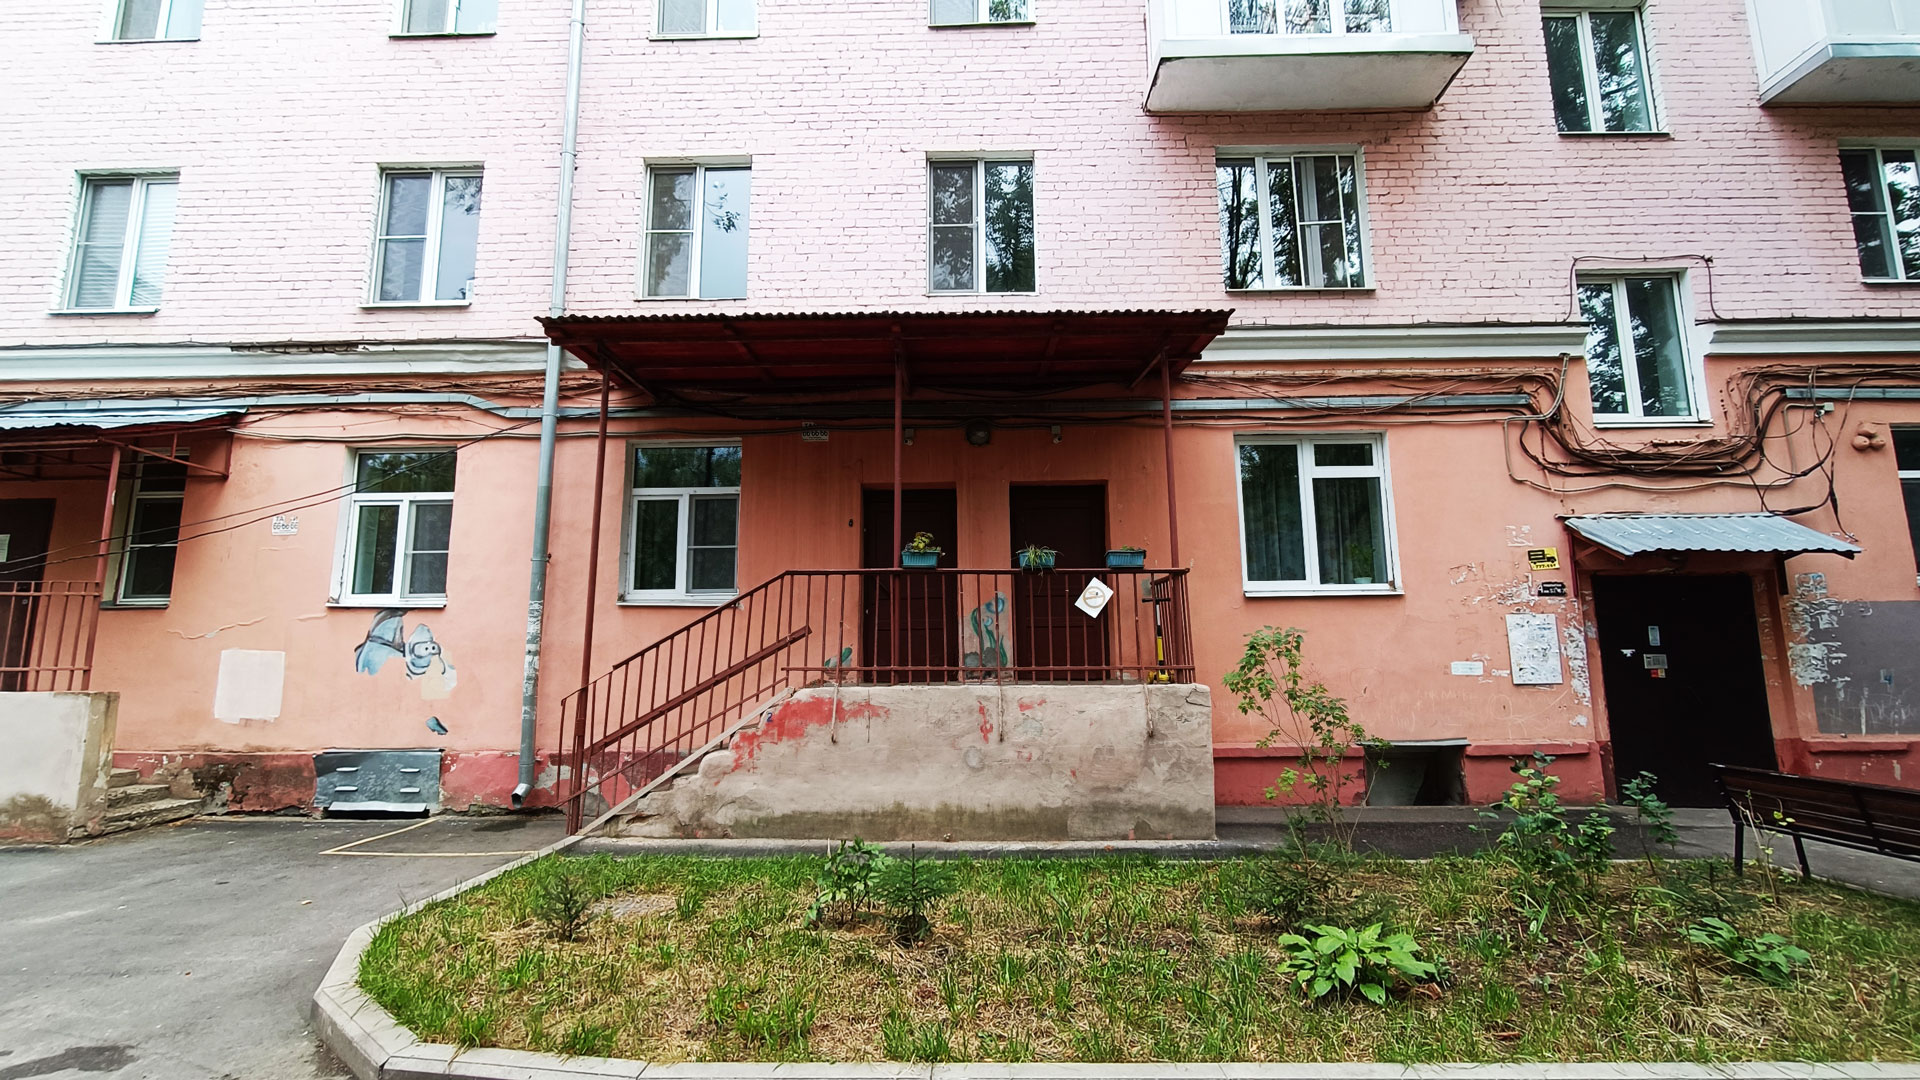 Детский сад 214 Ярославль: общий вид здания.